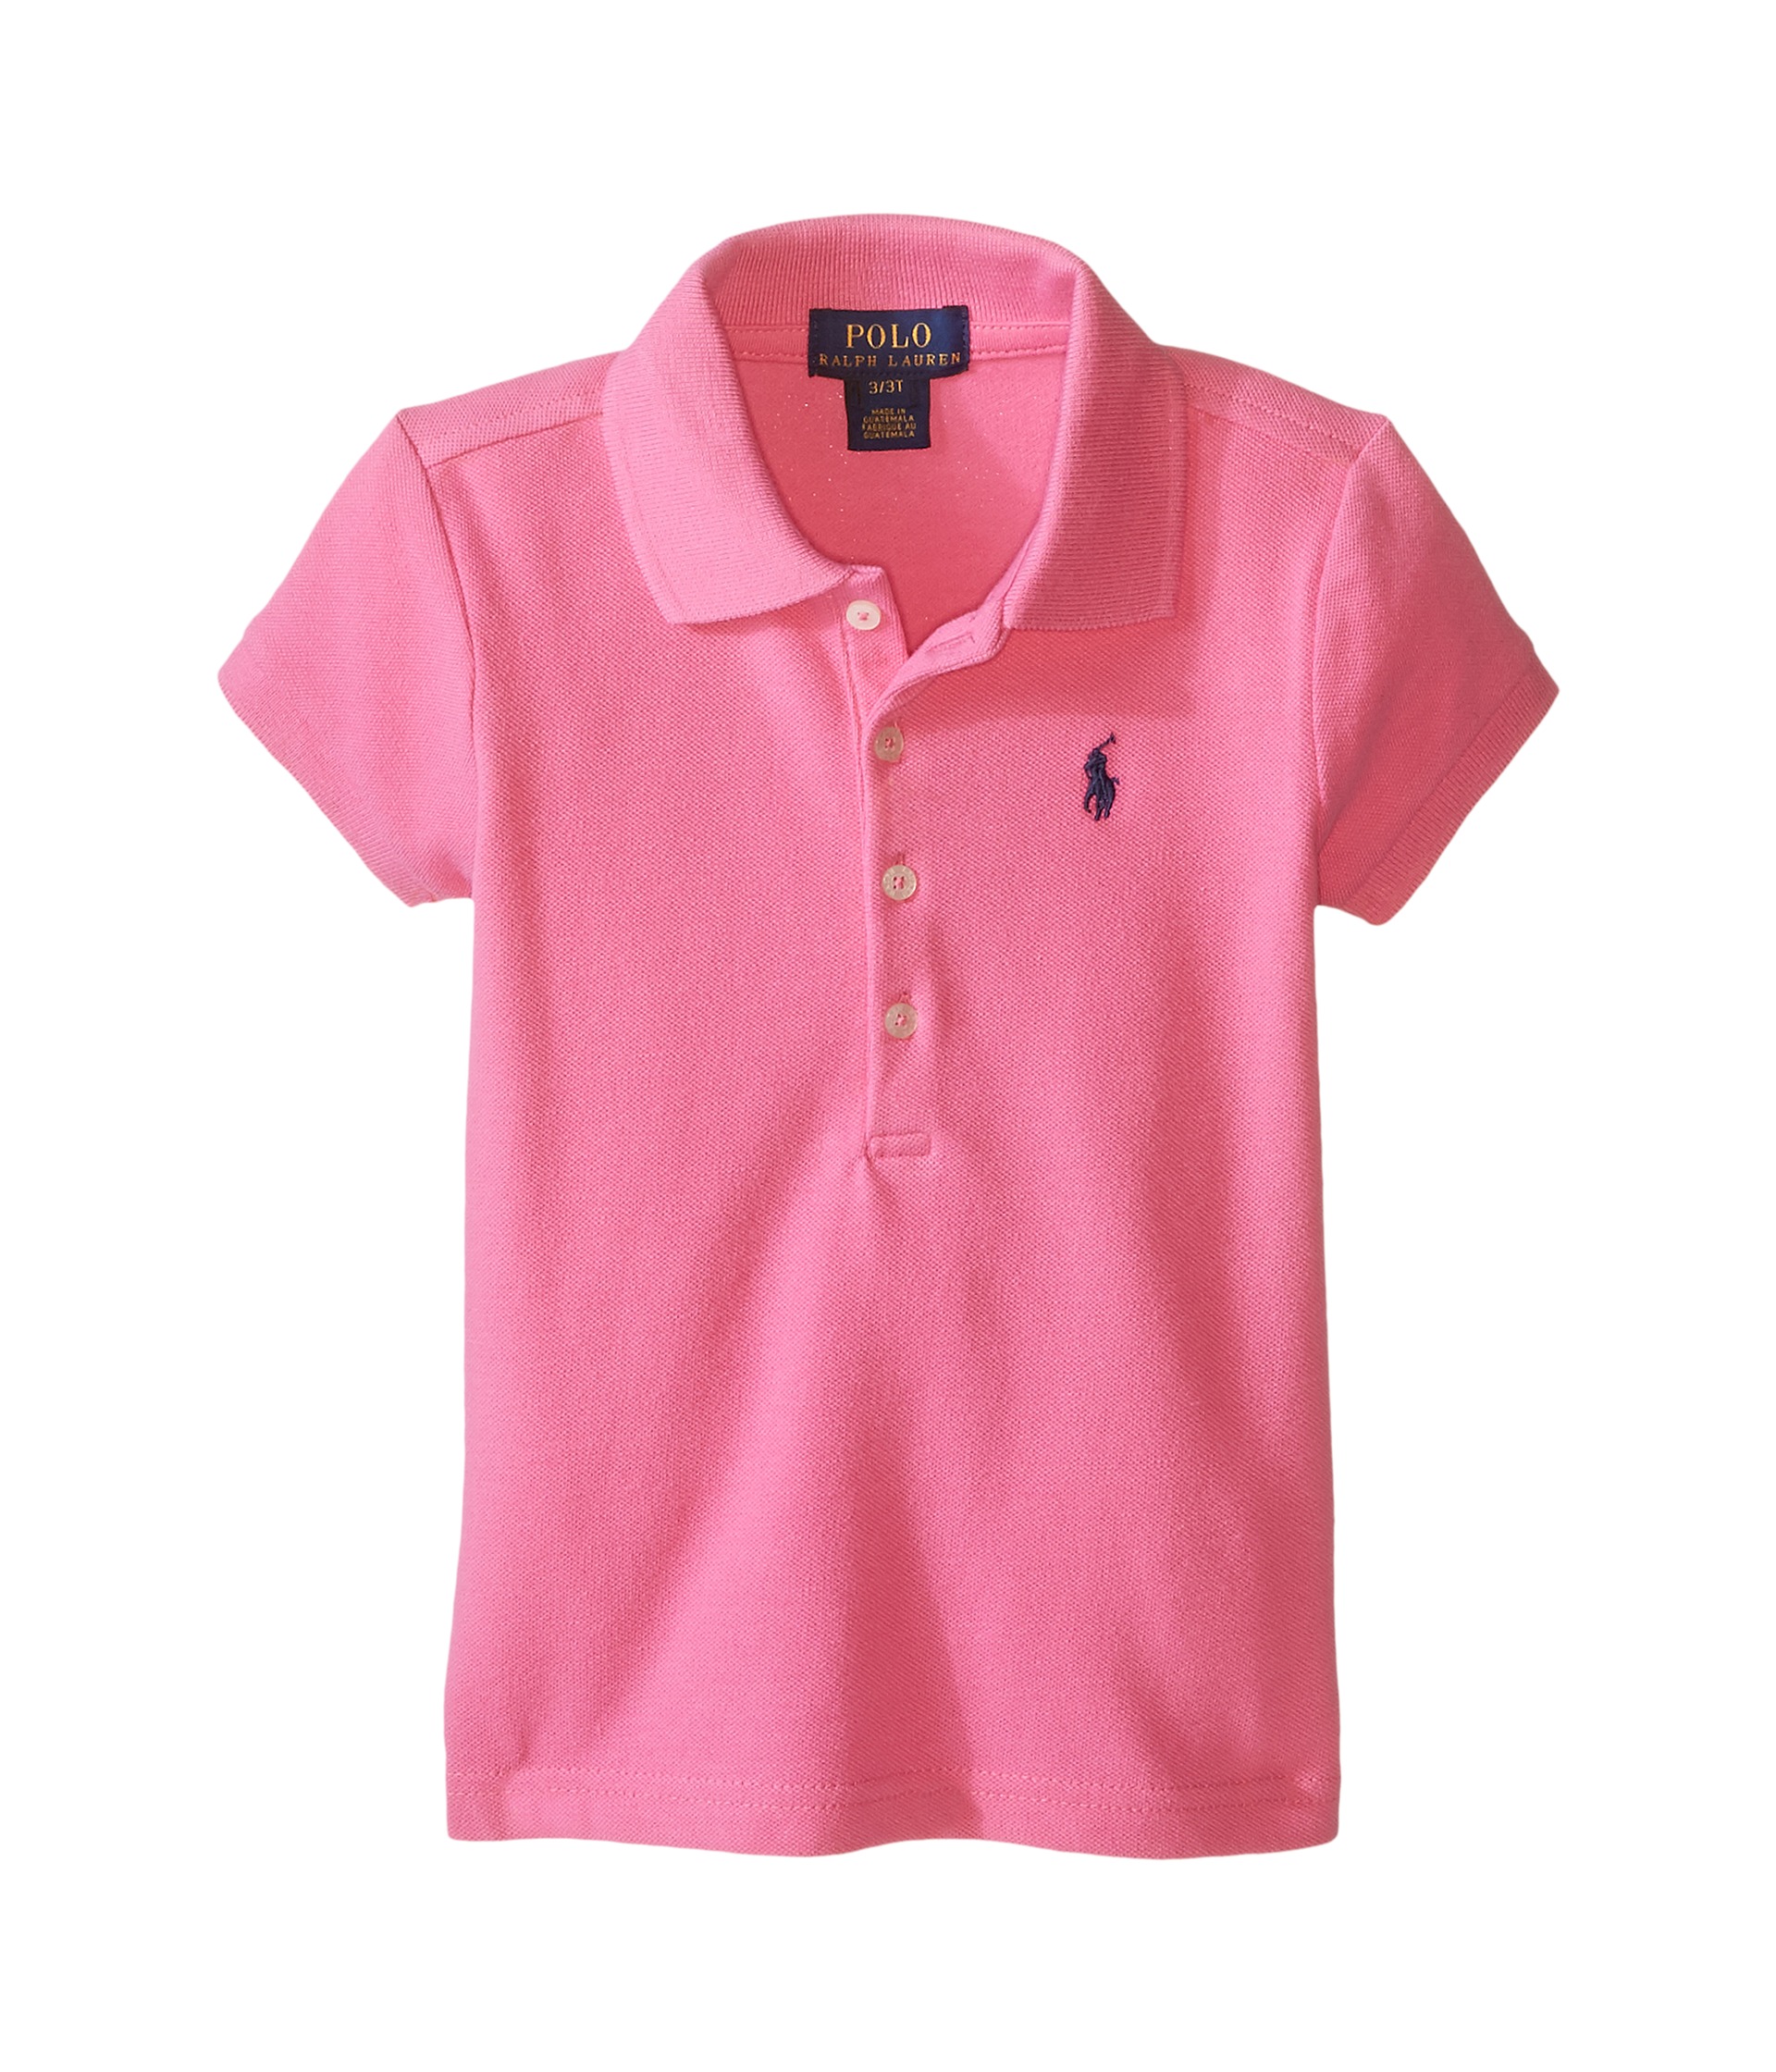 Polo Ralph Lauren Kids Short Sleeve Mesh Polo Shirt (Toddler) Maui Pink